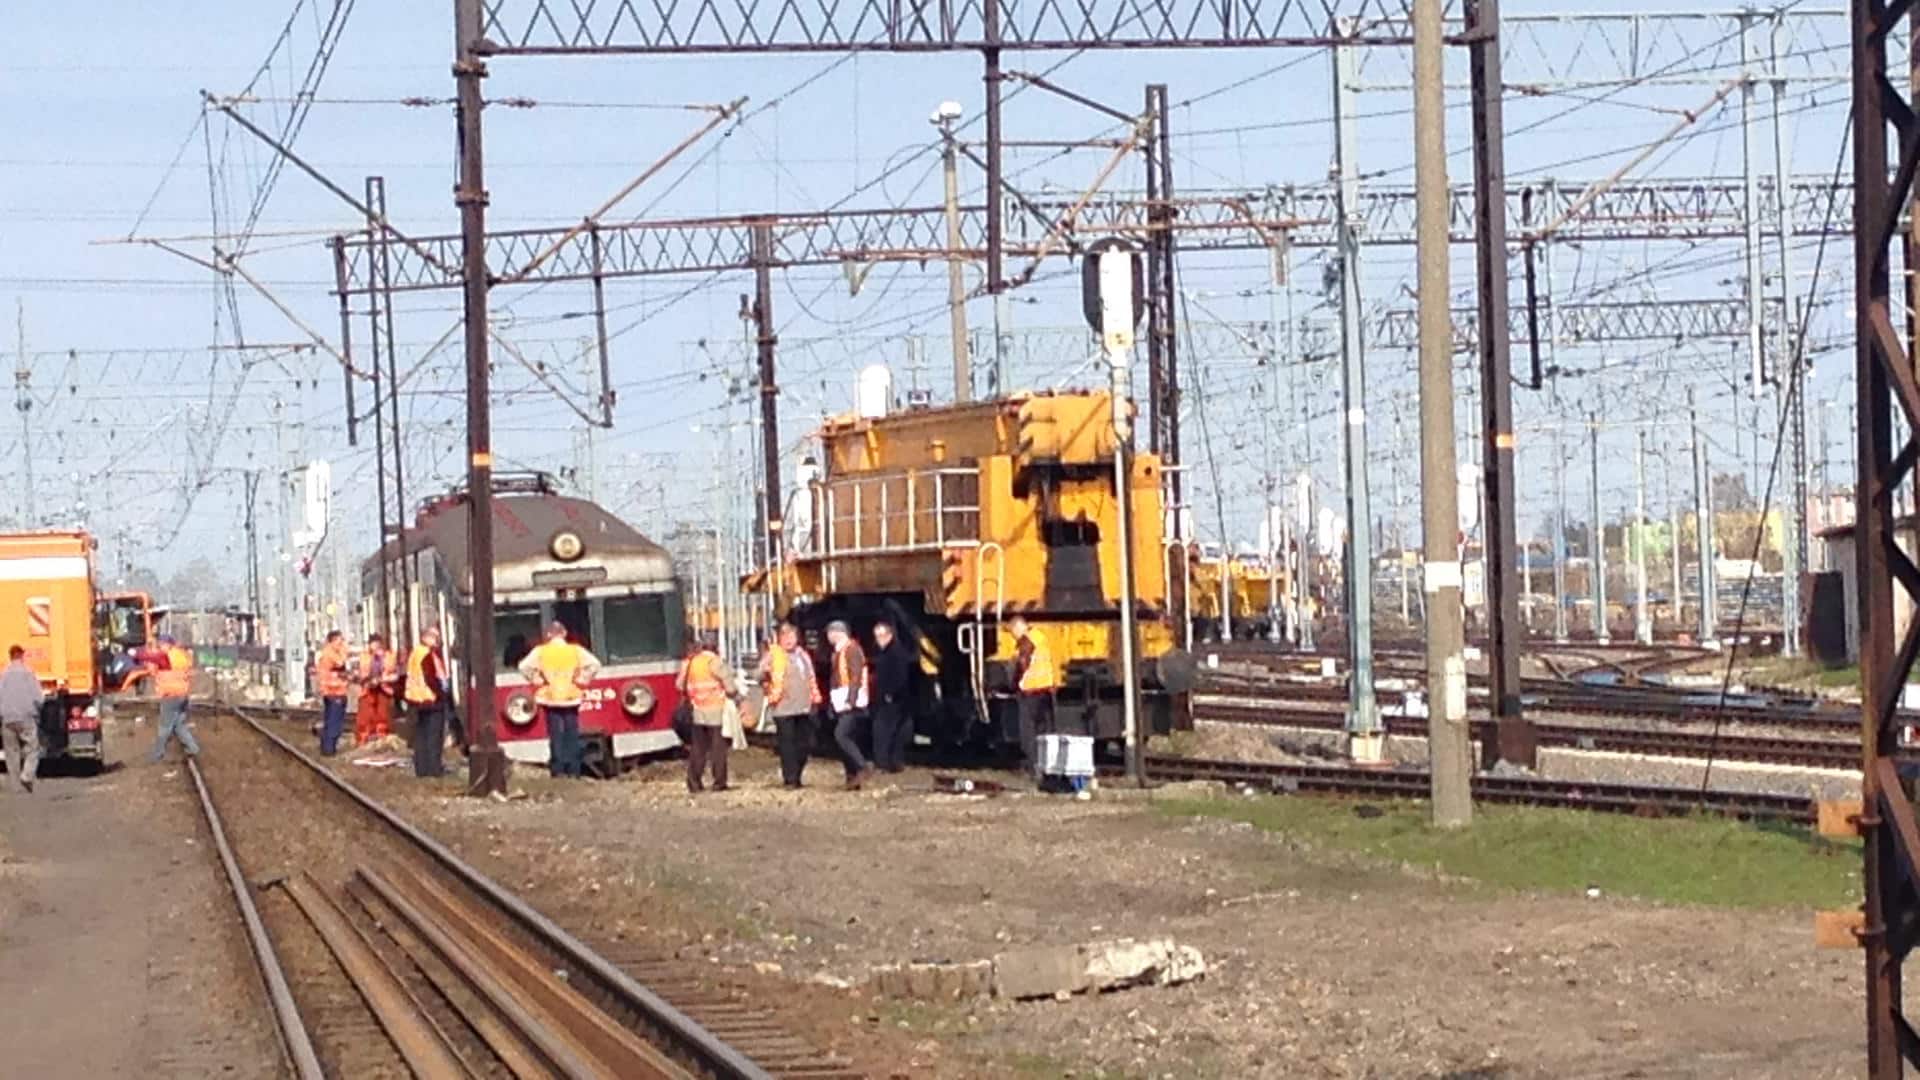 Pociąg wykoleił się w Iławie [FOTO] wypadek Olsztyn, Wiadomości, zShowcase